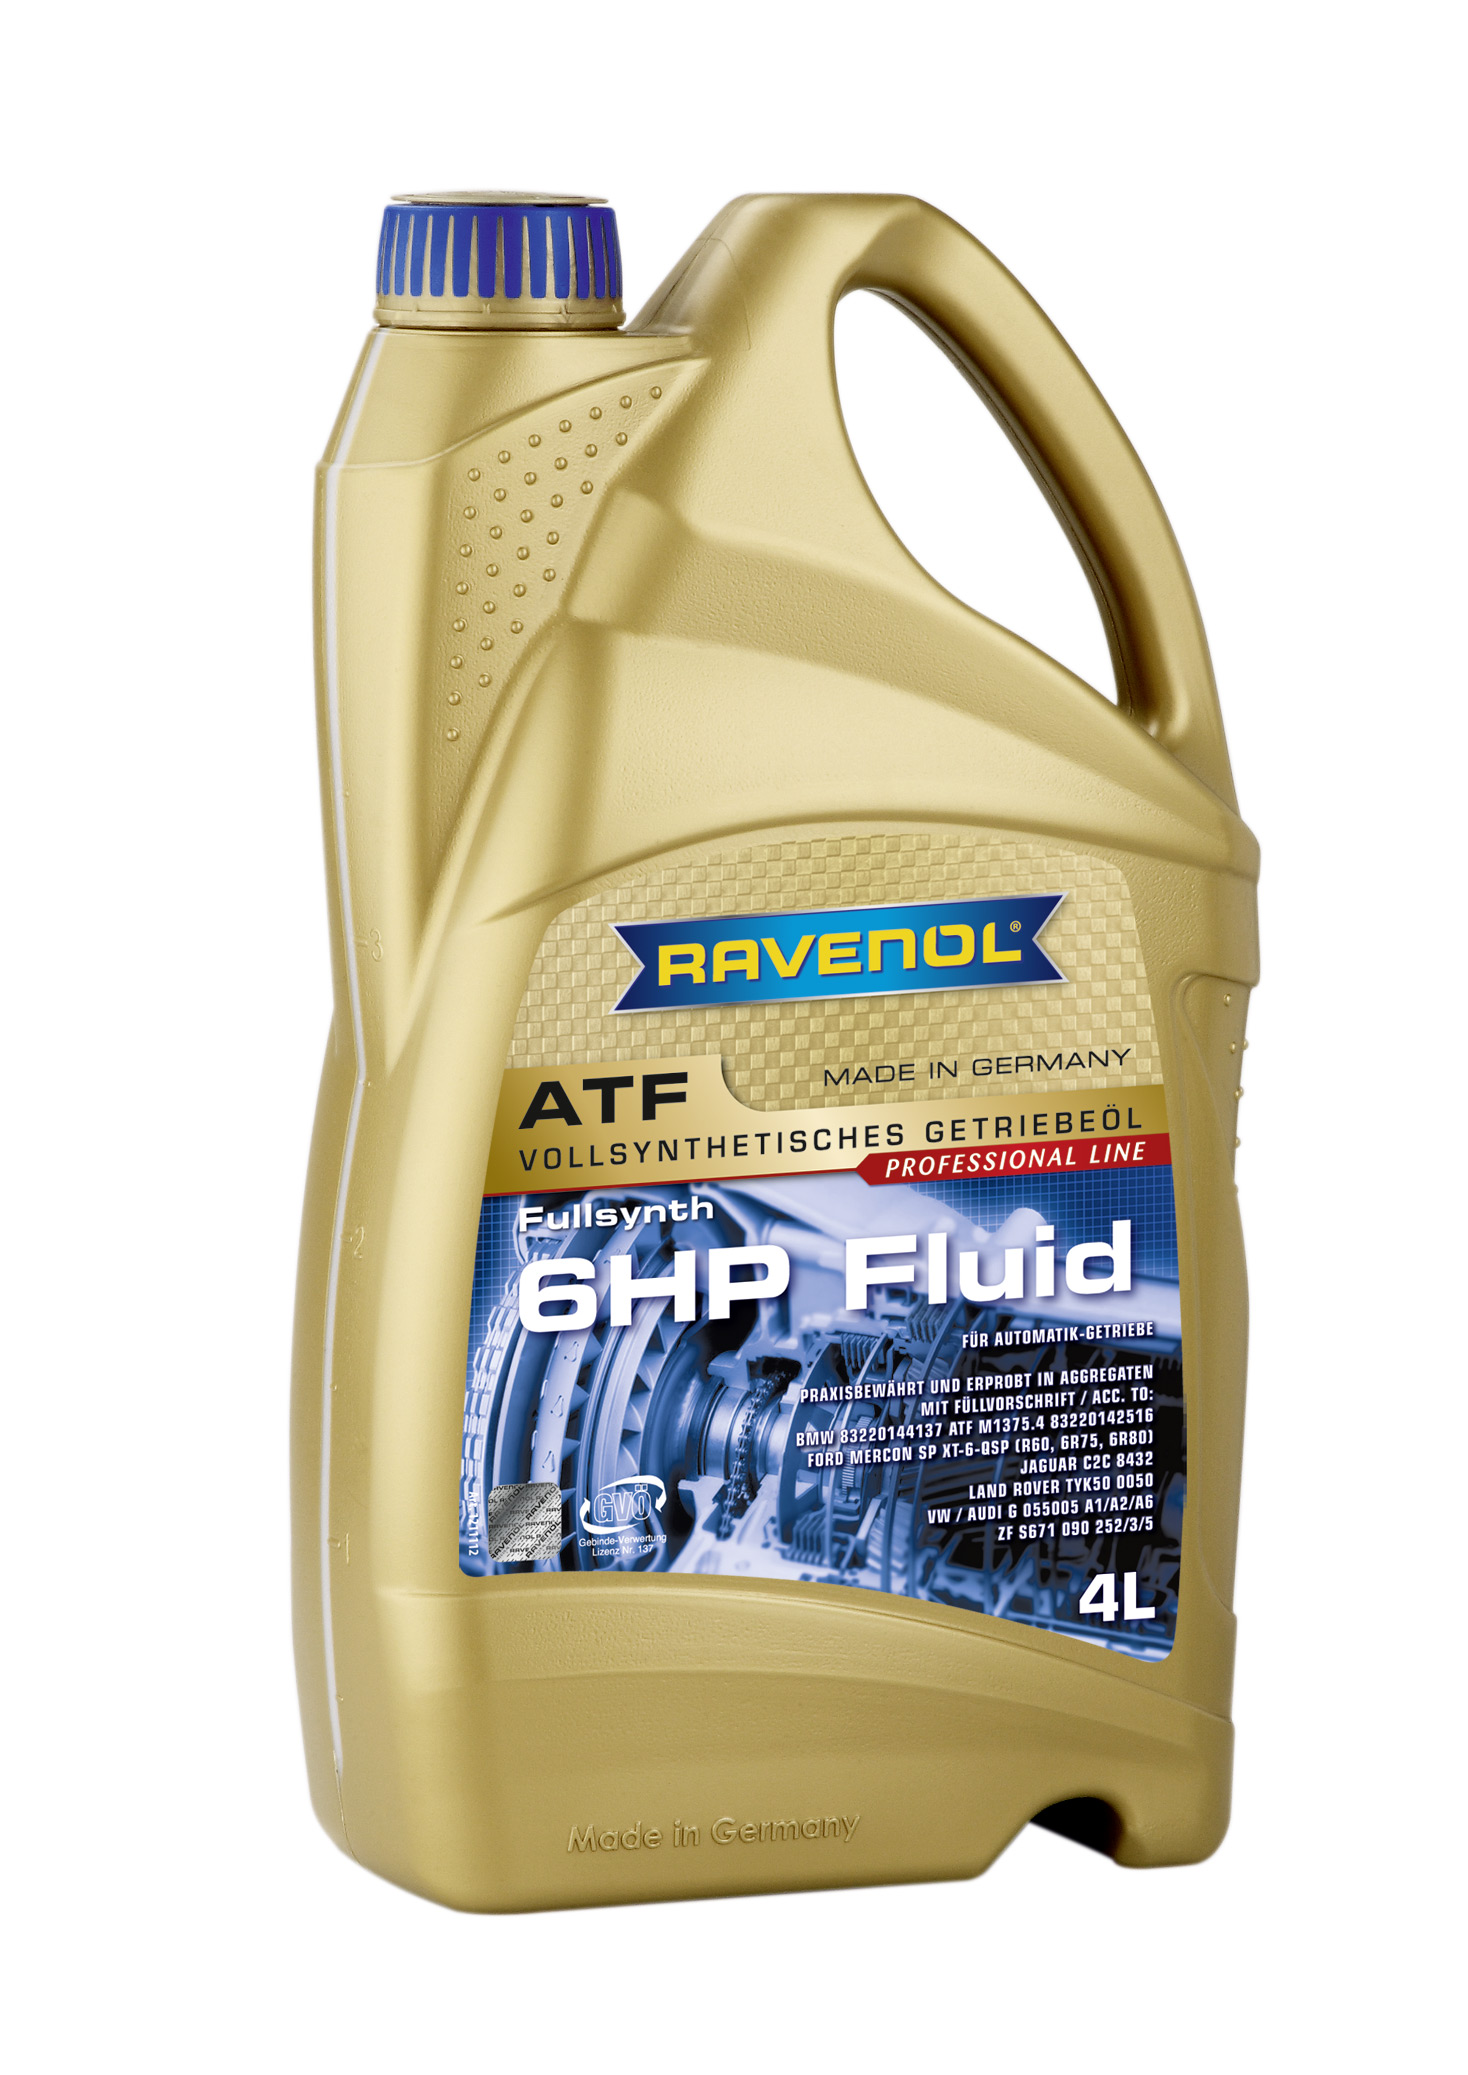 Трансмиссионное масло RAVENOL ATF 6 HP Fluid (4л) new 4014835732797